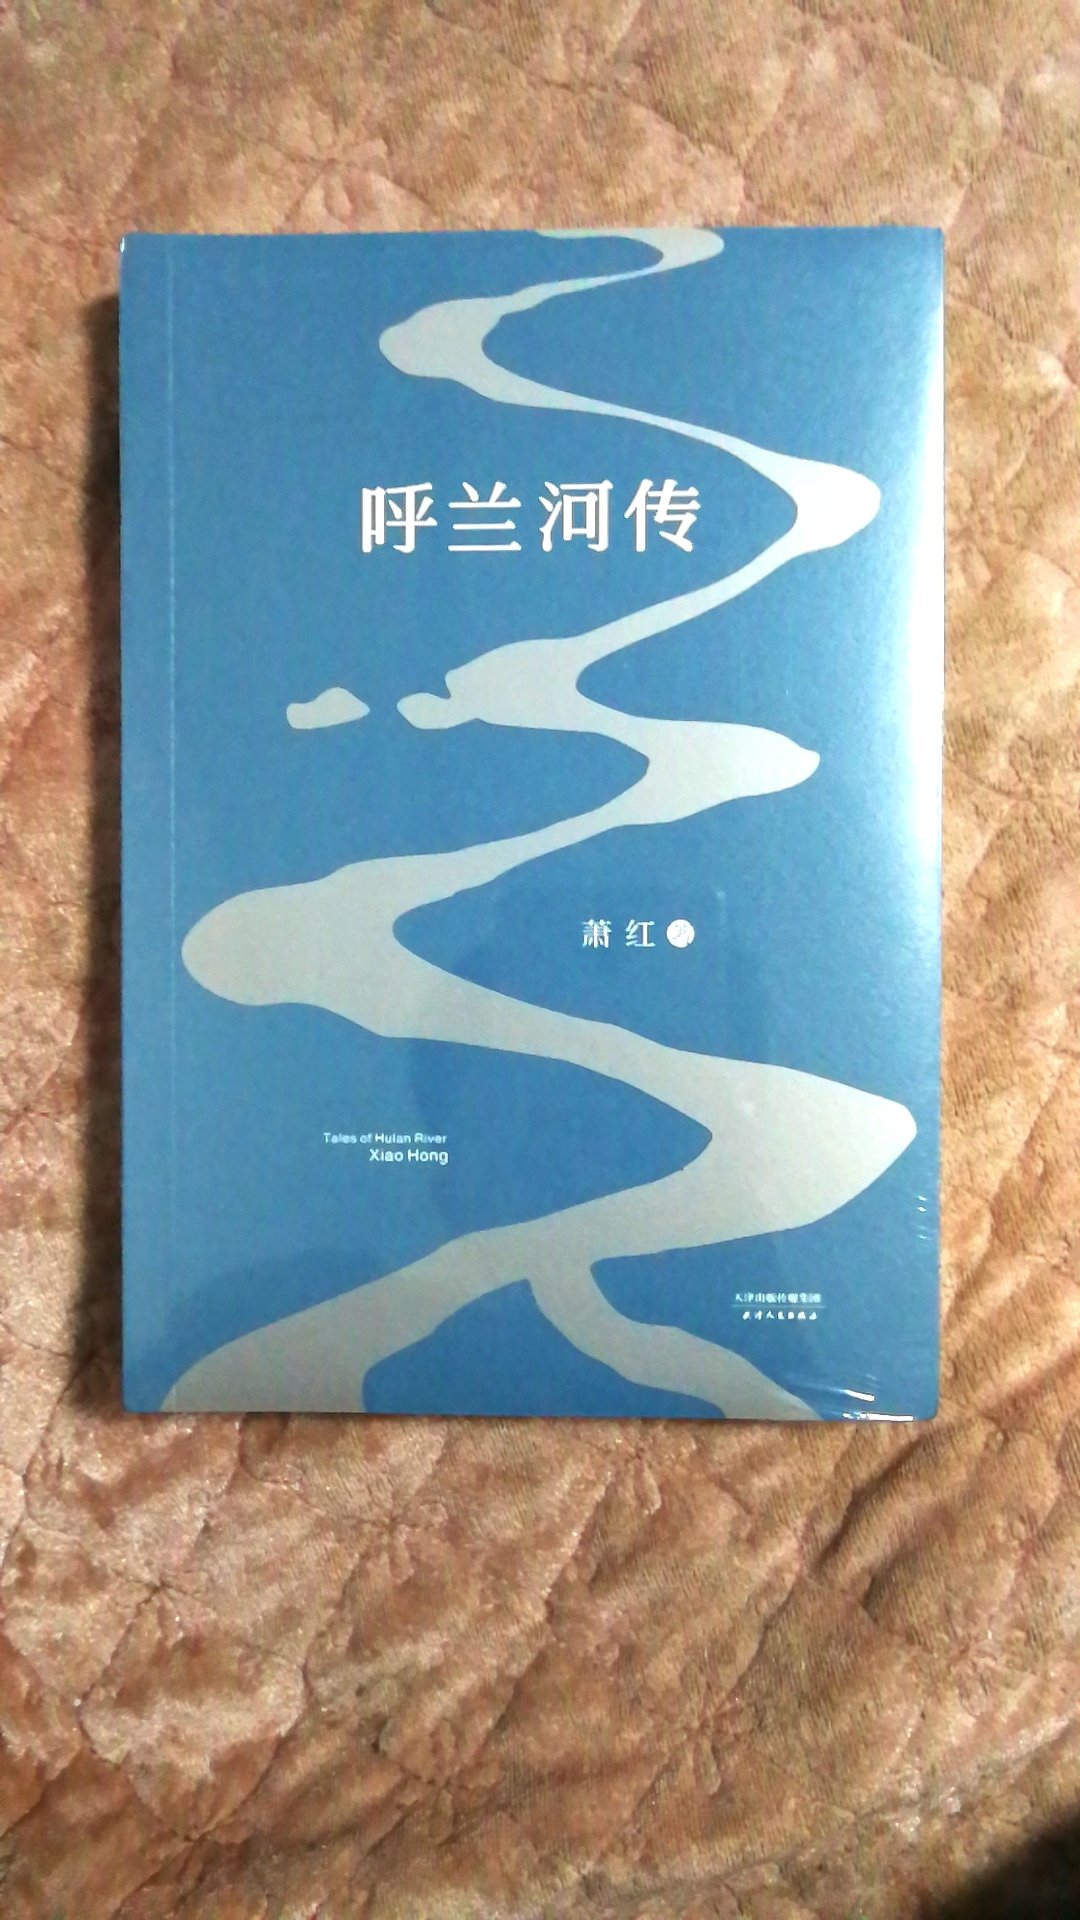 萧红是中国现代文学史上的重要女作家，她很有才情，可惜命运坎坷。夏志清对她评价极高。当前市场上版本众多，先买这本看看。